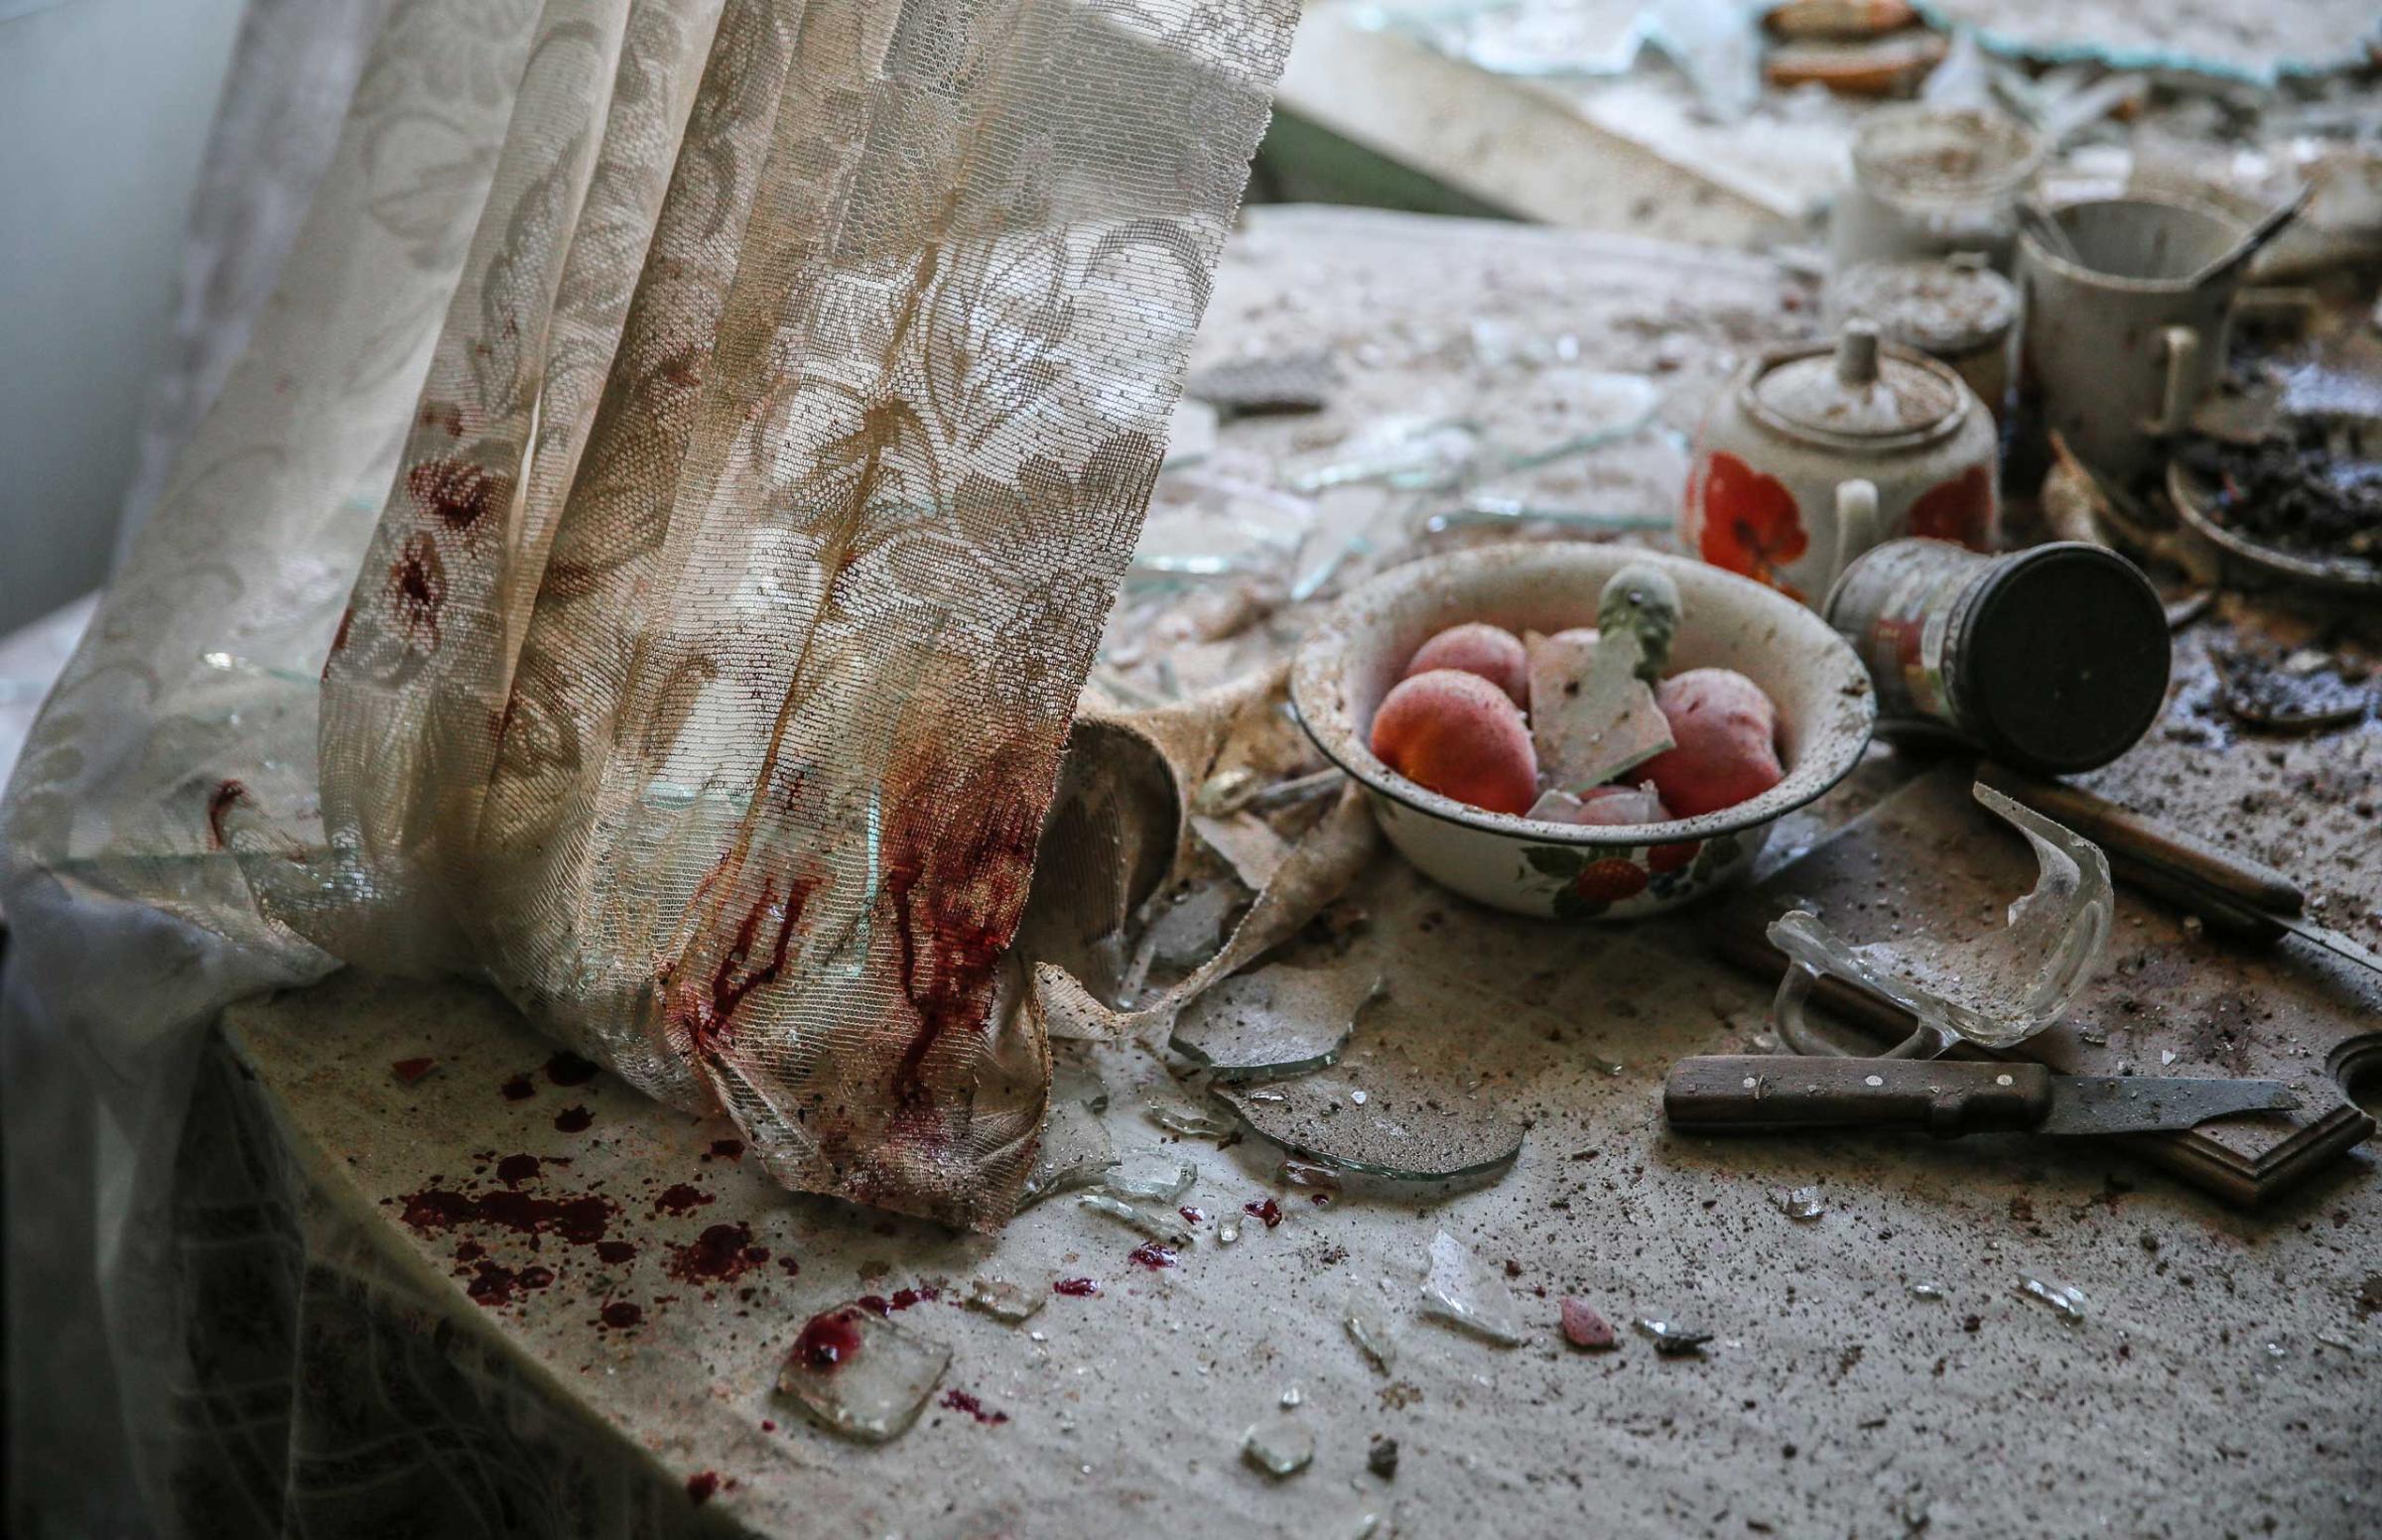 Damaged goods lie in a damaged kitchen in downtown Donetsk, Ukraine, Aug. 26, 2014.